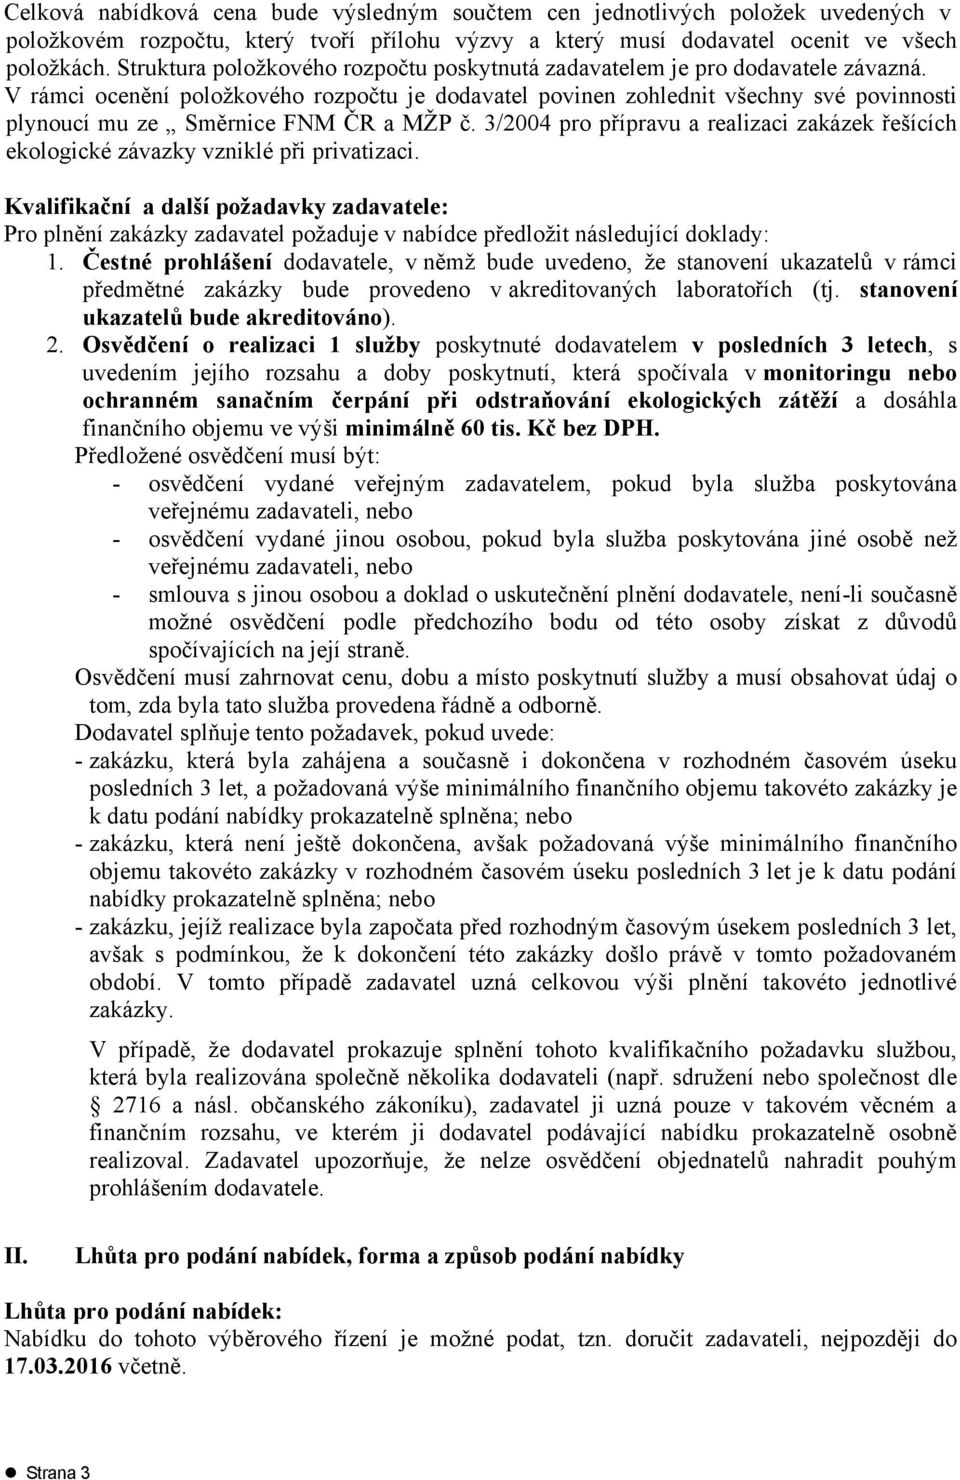 V rámci ocenění položkového rozpočtu je dodavatel povinen zohlednit všechny své povinnosti plynoucí mu ze Směrnice FNM ČR a MŽP č.